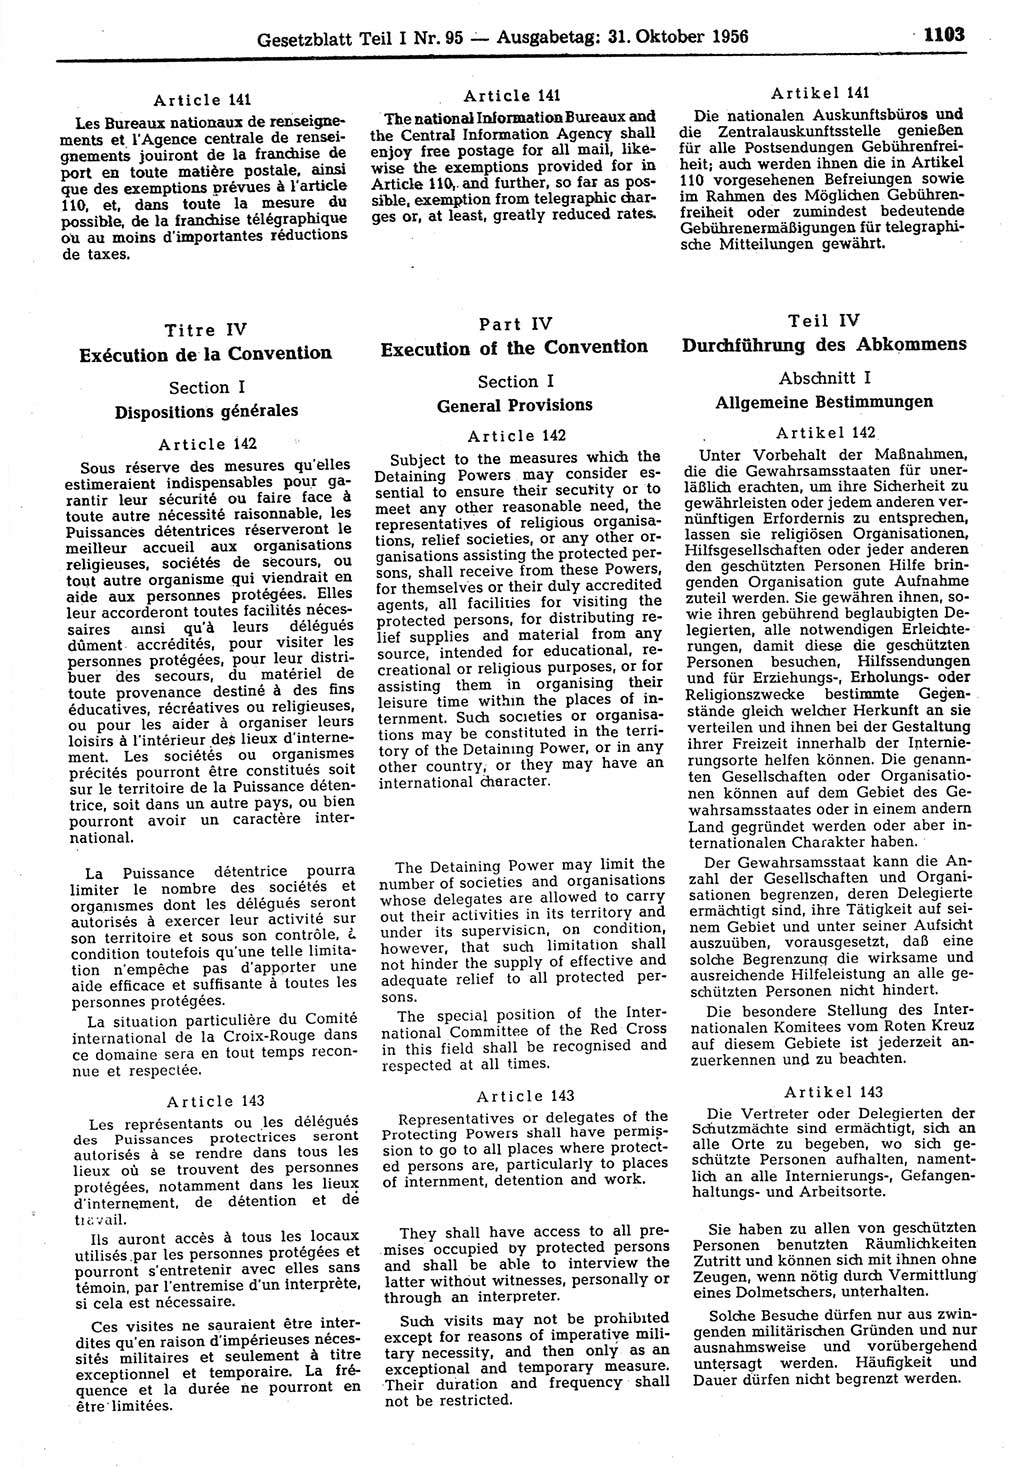 Gesetzblatt (GBl.) der Deutschen Demokratischen Republik (DDR) Teil Ⅰ 1956, Seite 1103 (GBl. DDR Ⅰ 1956, S. 1103)